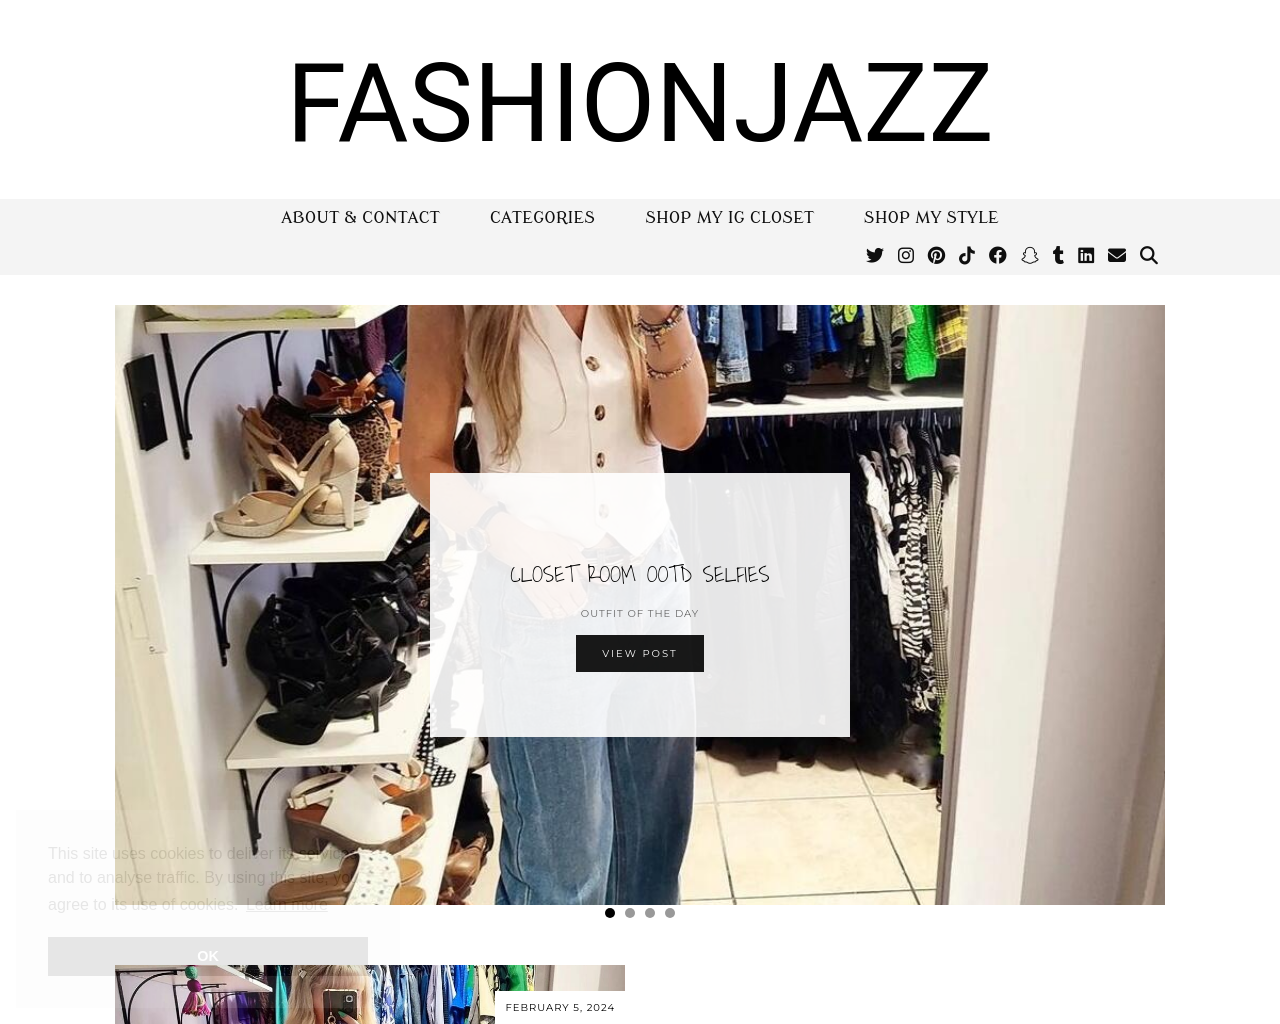 fashionjazz.co.za